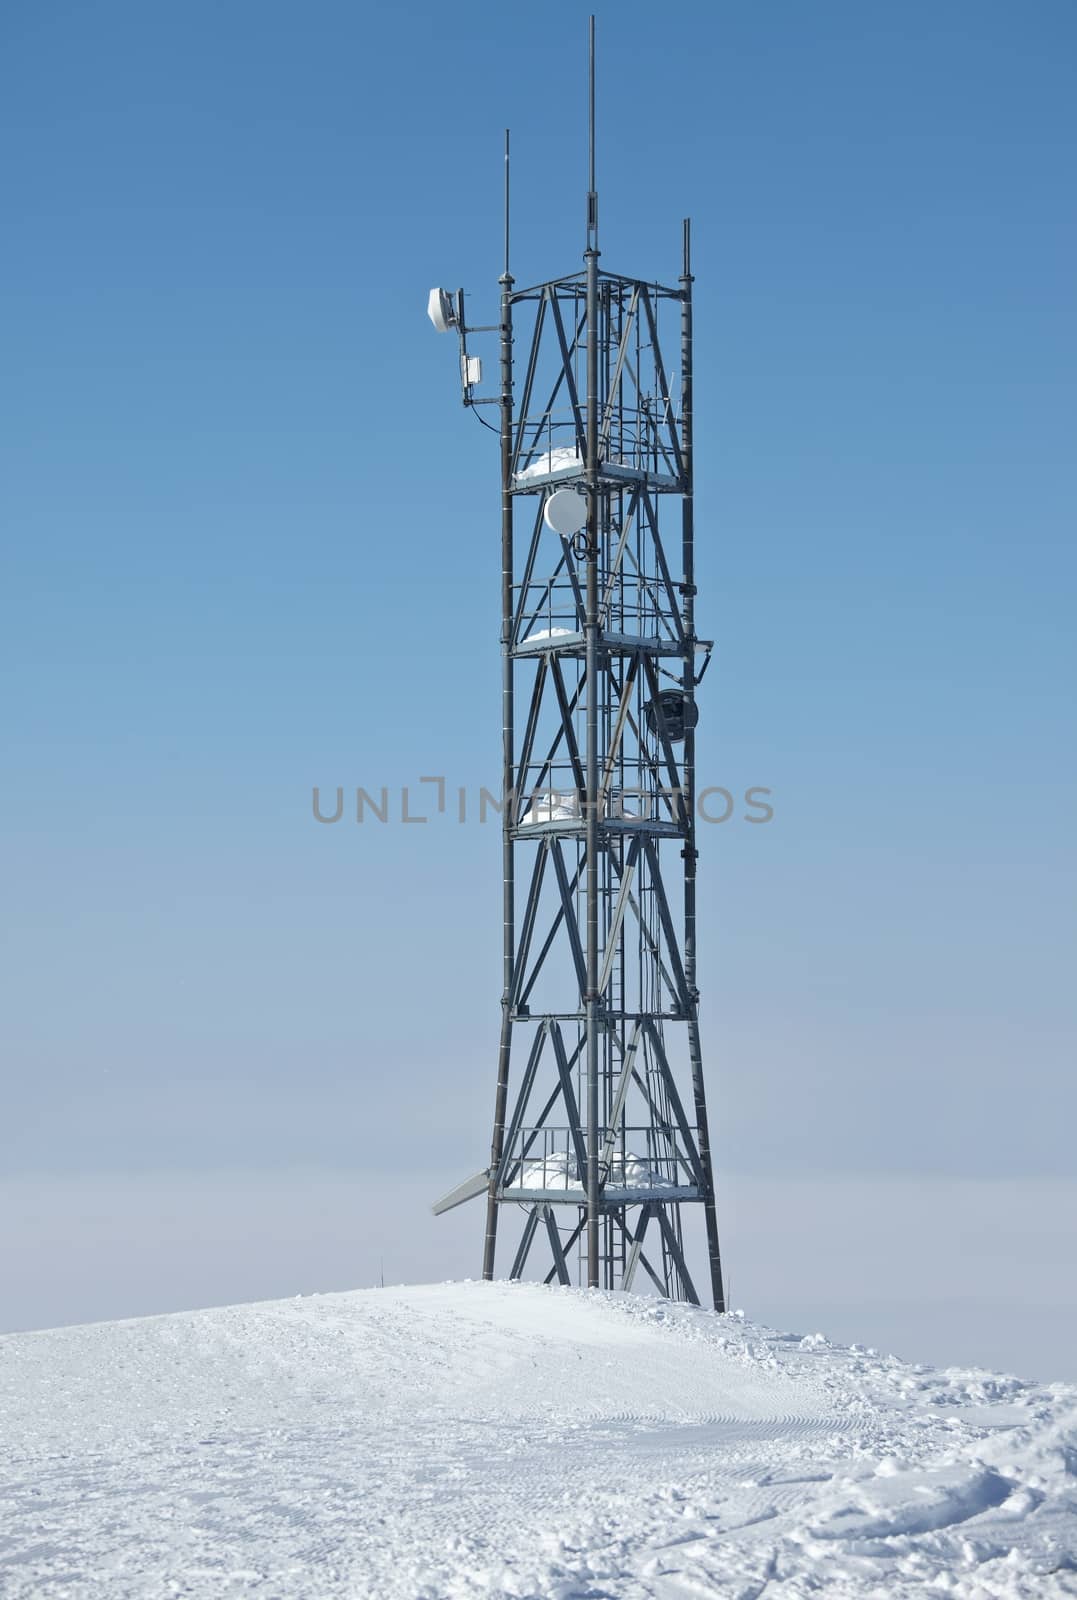 High transmitter tower against overcast sky